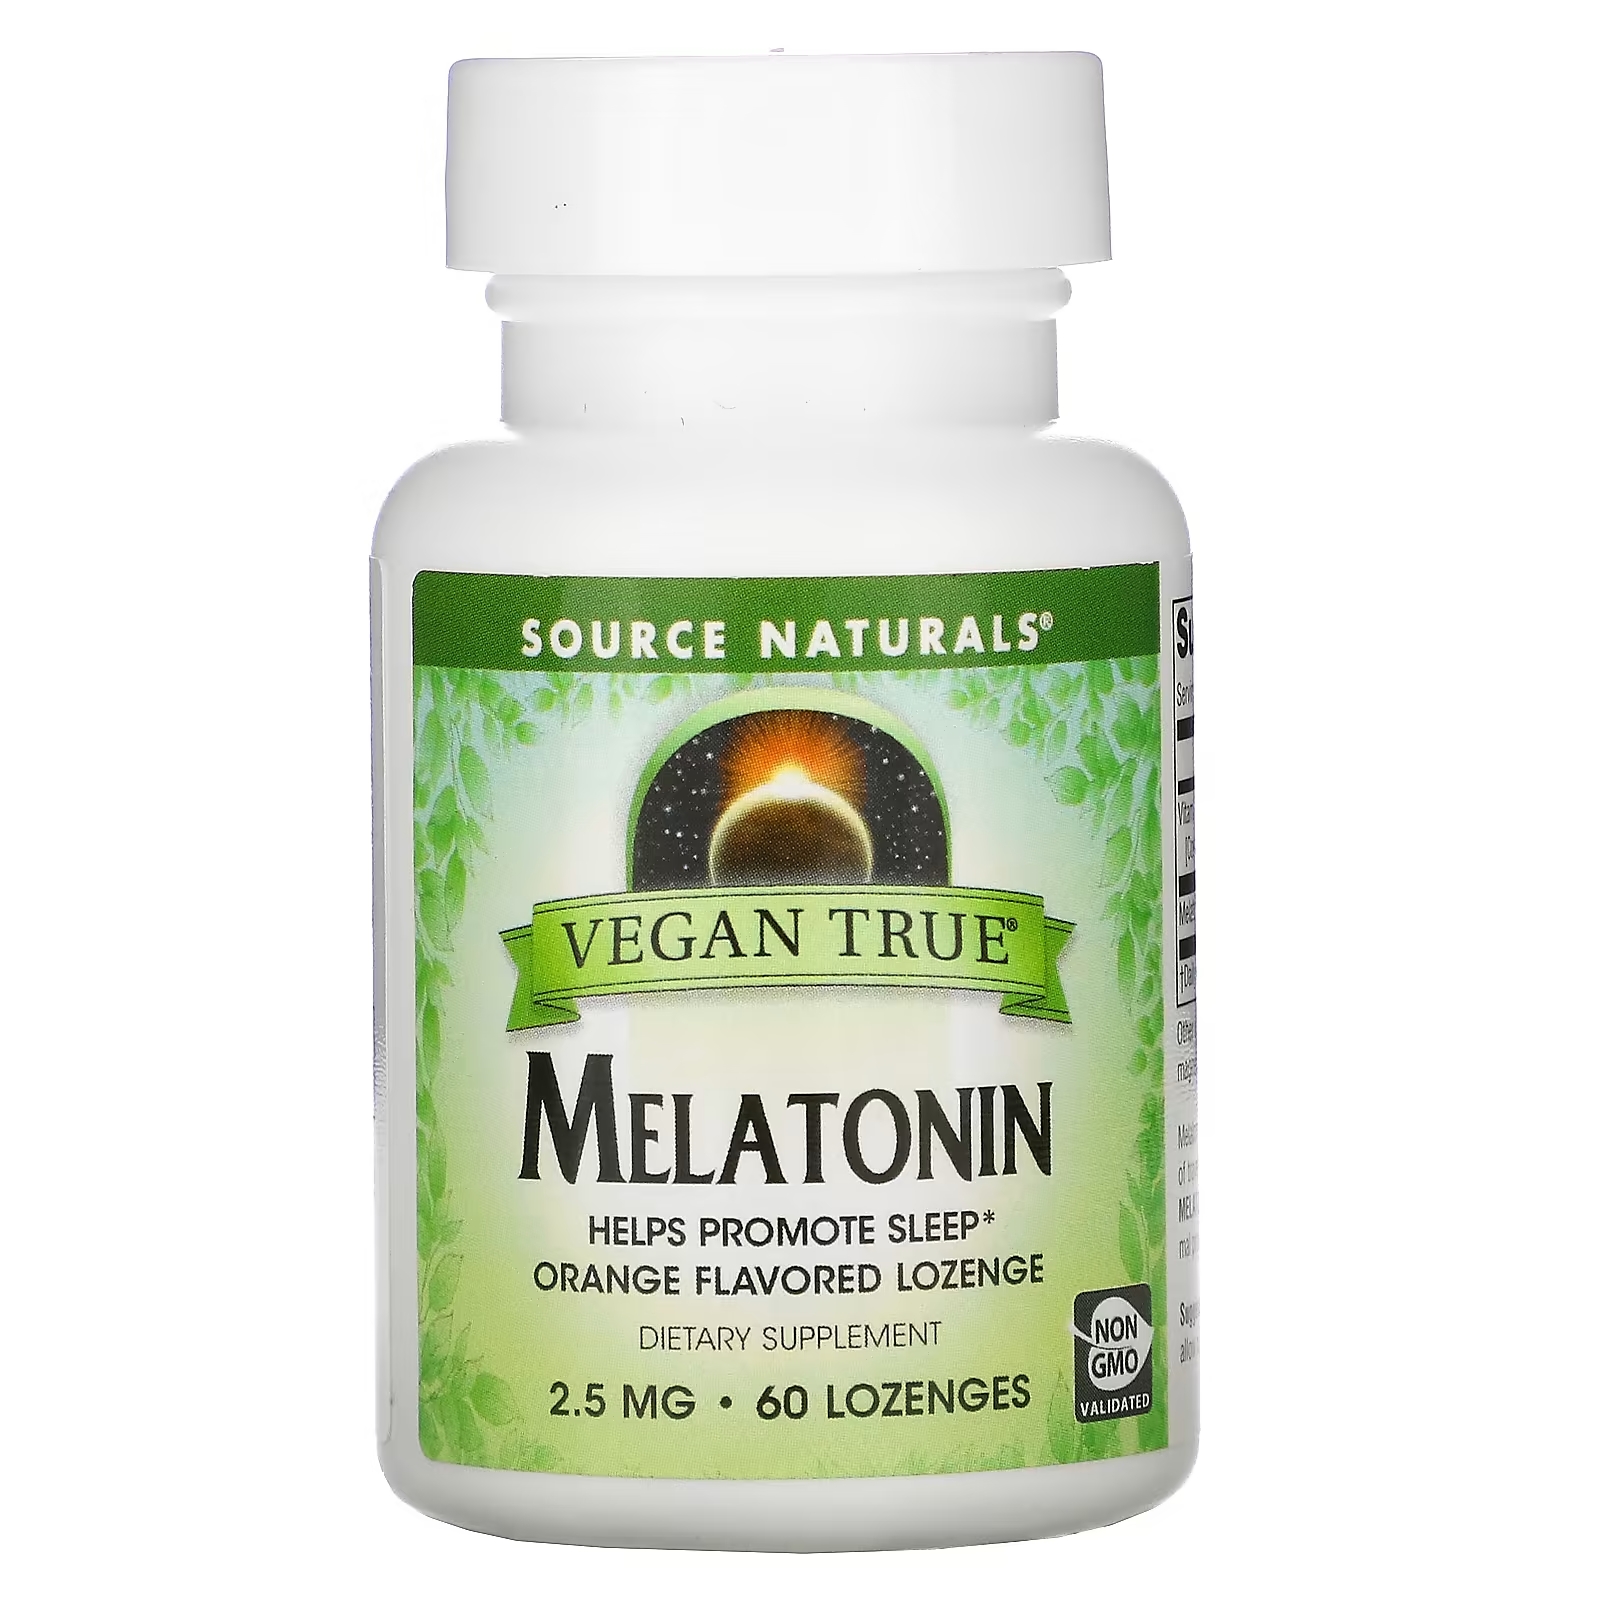 Source Naturals Истинно Веган Мелатонин Апельсин 2,5 мг, 60 таблеток